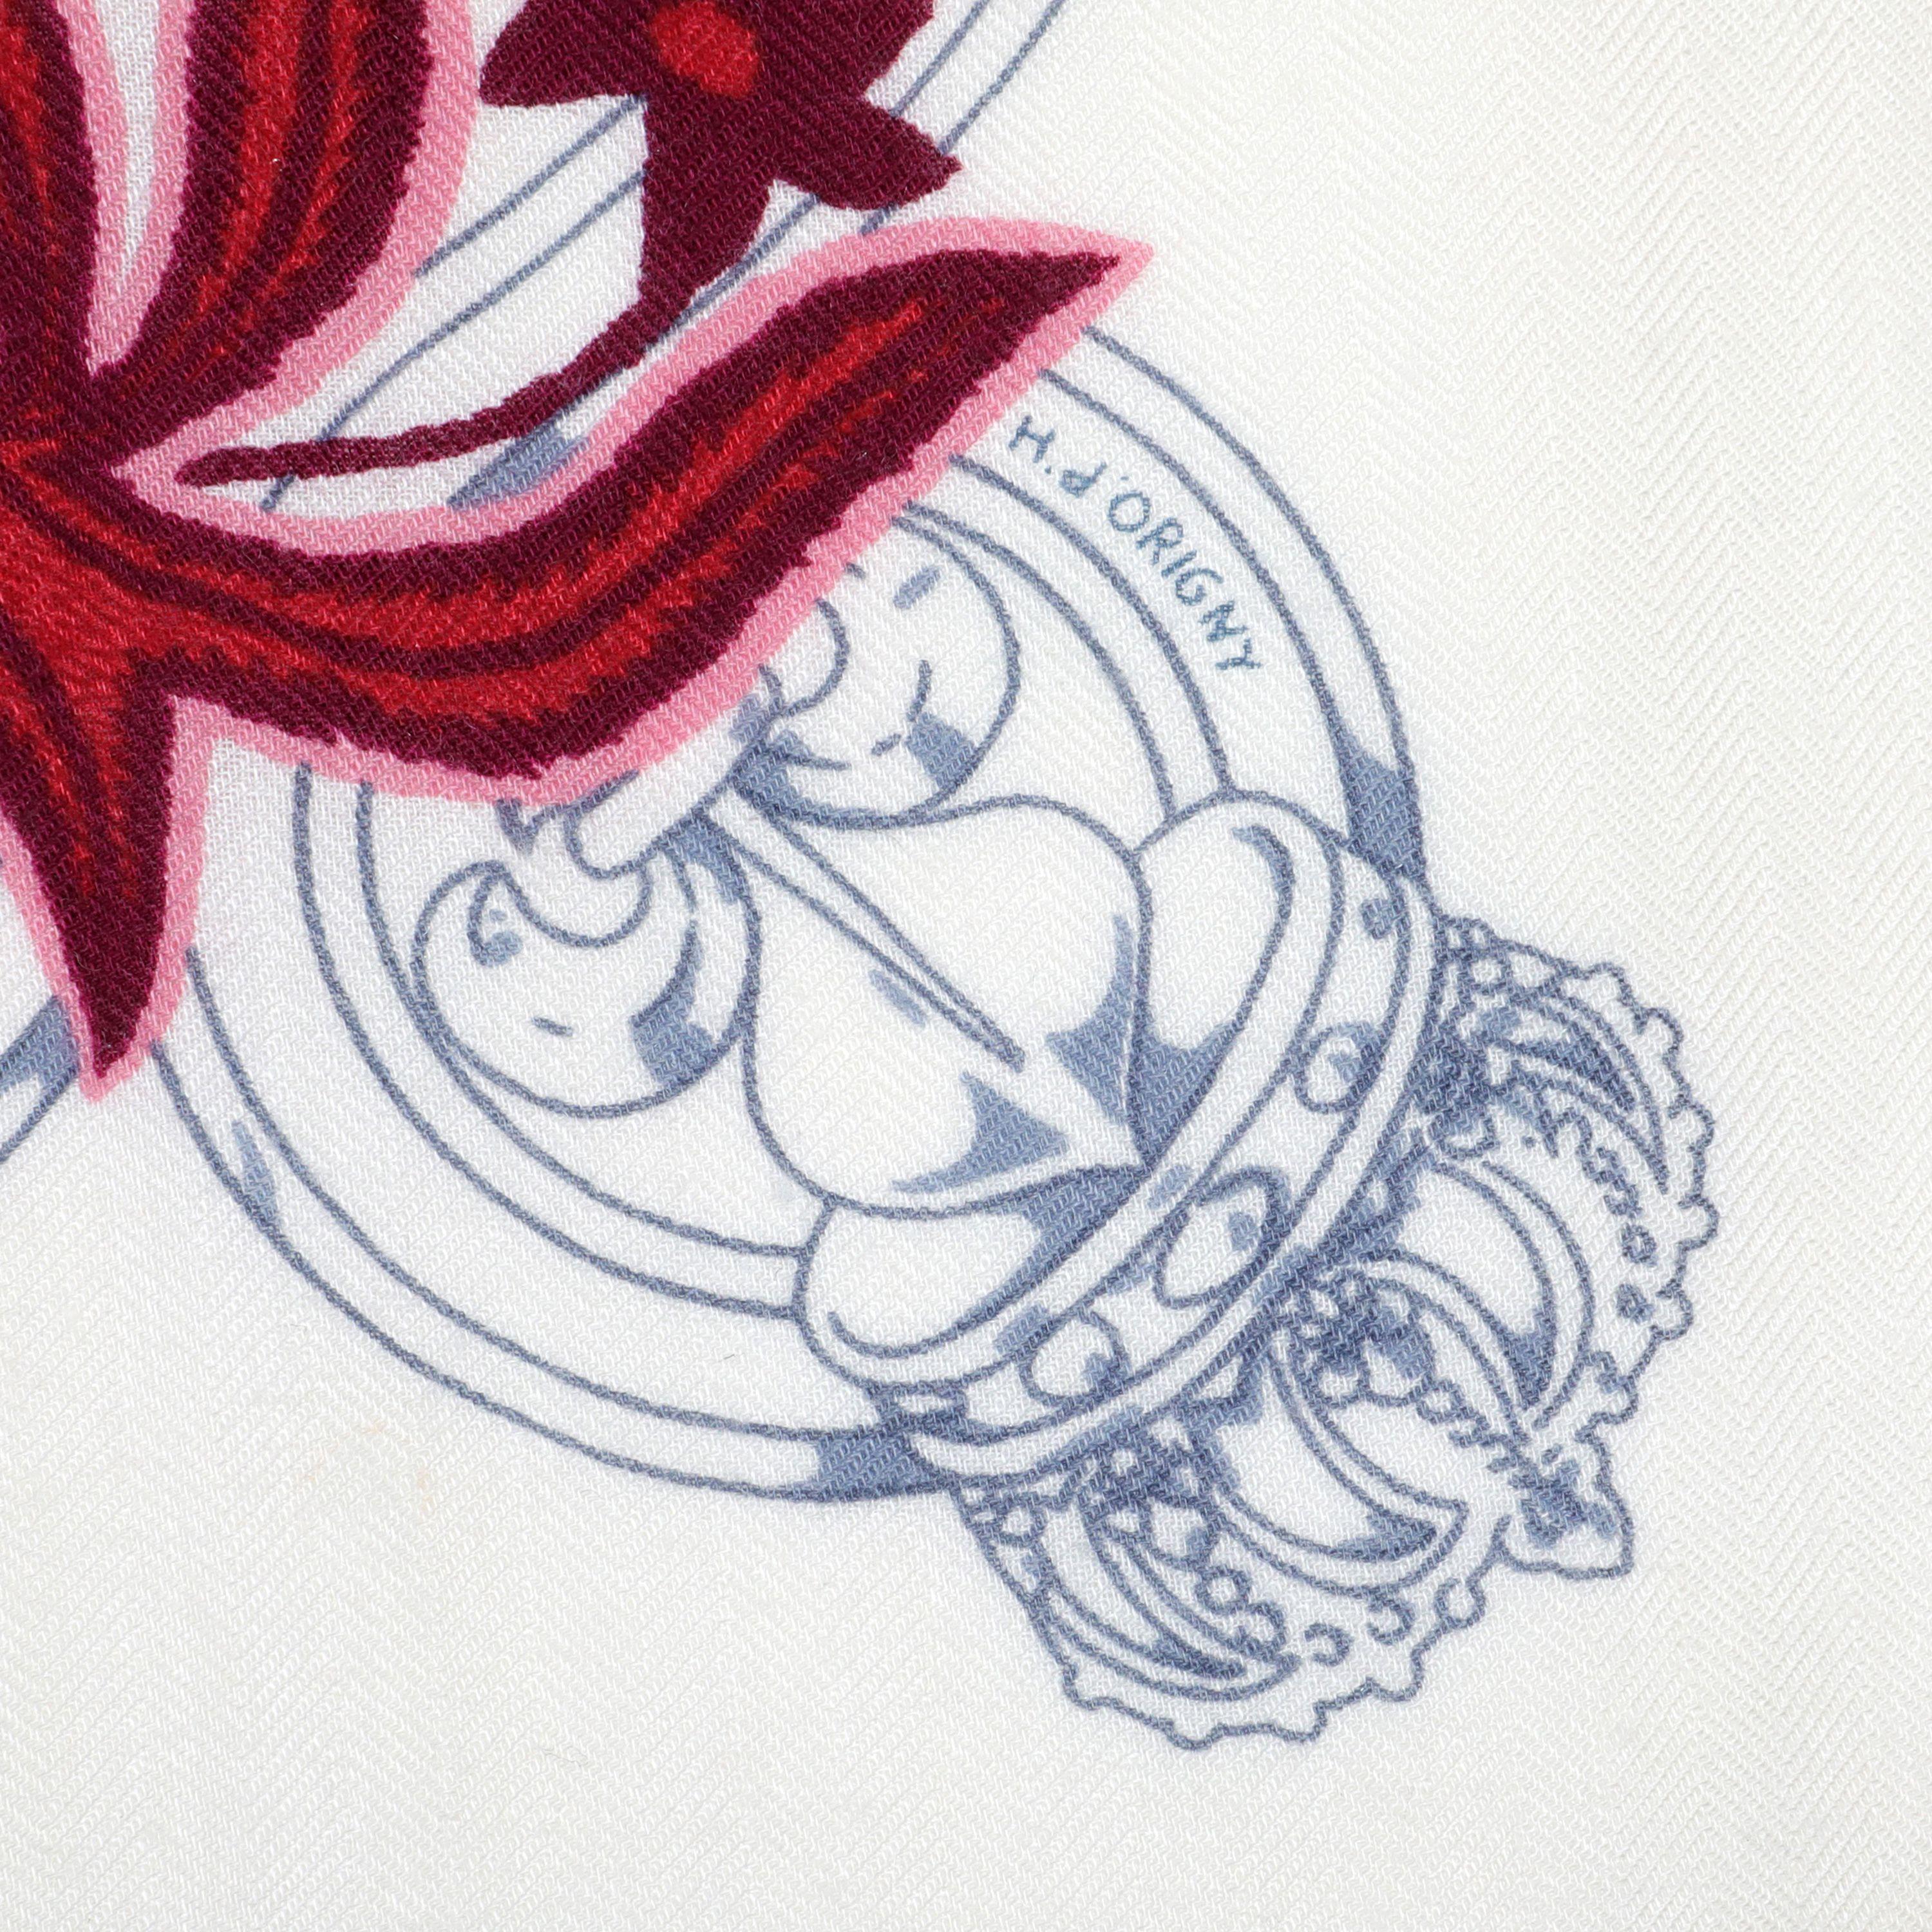 Dieses authentische Hermès White Belts and Stirrups Floral Scarf ist tadellos. Weiß mit dezentem Hintergrund aus Pferdemotiven und rosa und lila Blumen.  

ACO 13832
